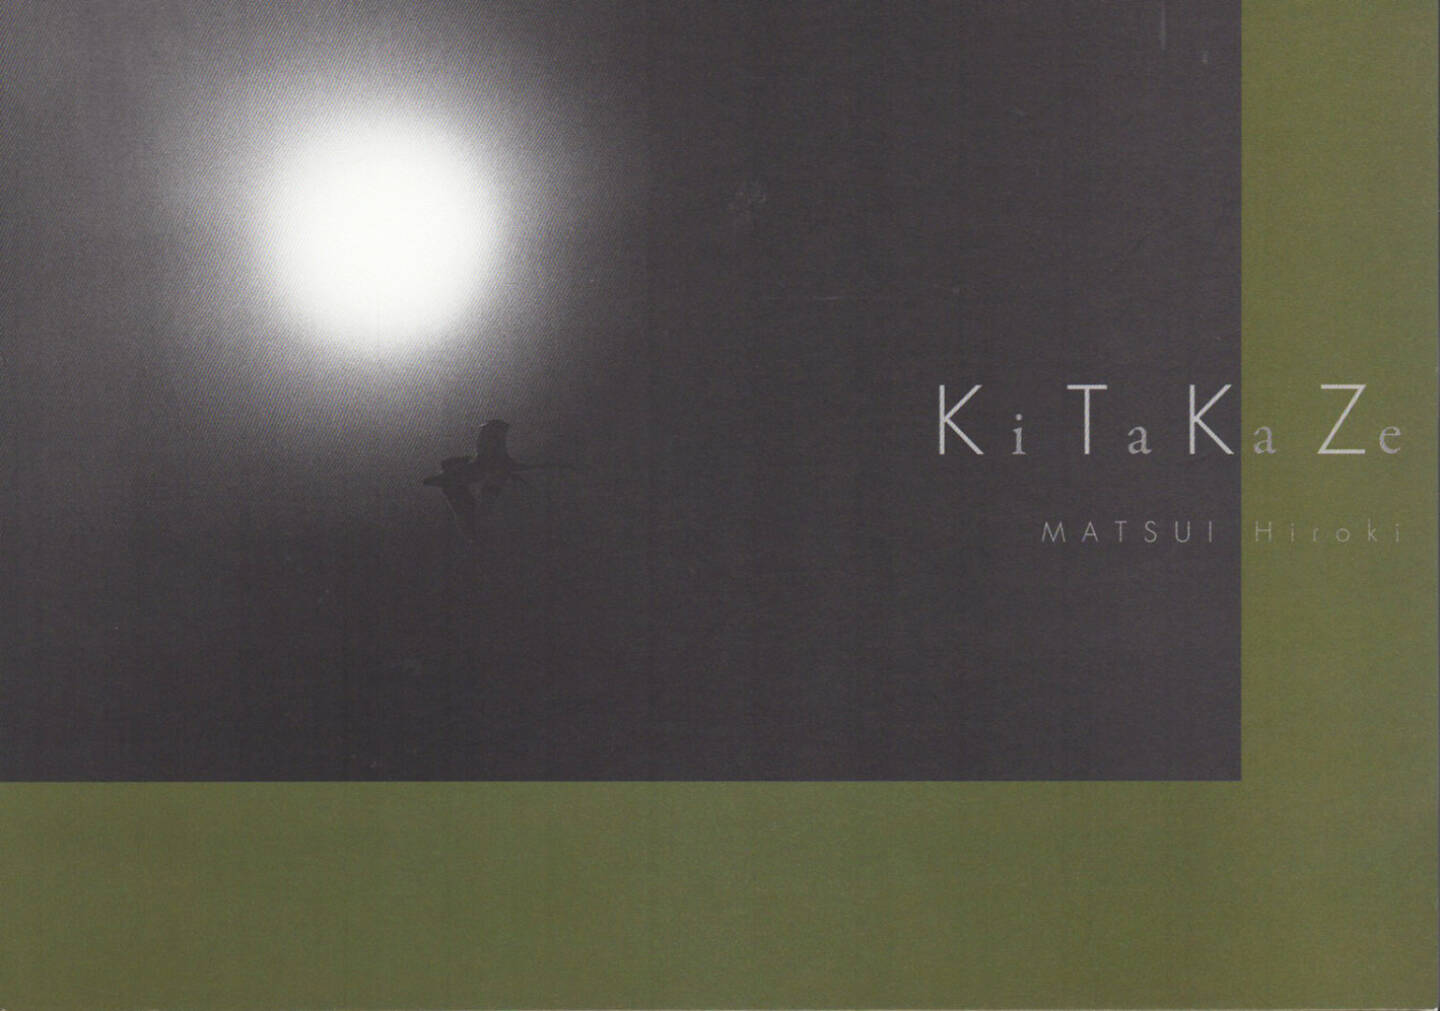 Hiroki Matui - Kitakaze, Graf Publishers, 2013, Cover - http://josefchladek.com/book/hiroki_matui_-_kitakaze